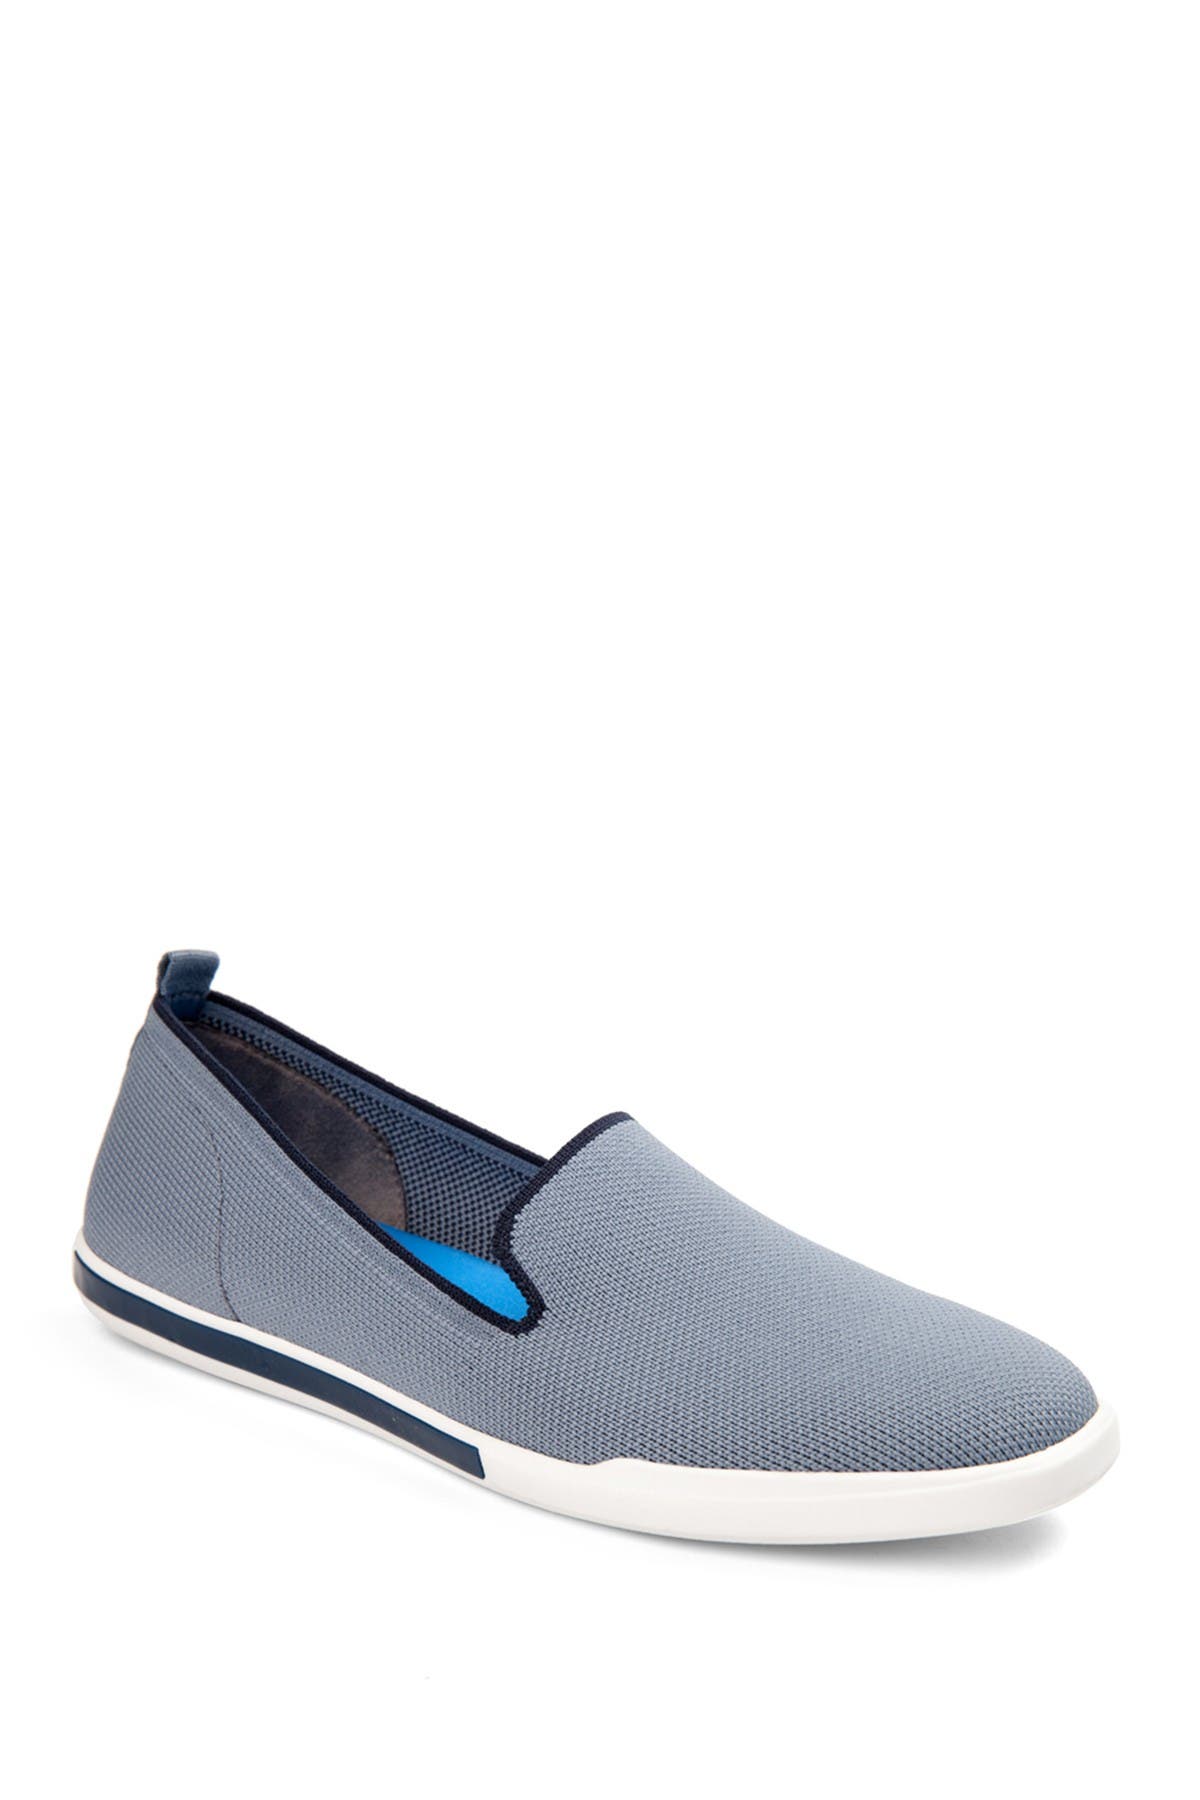 Adam Tucker Sporty Slip-on Shoe In Dark Blue6